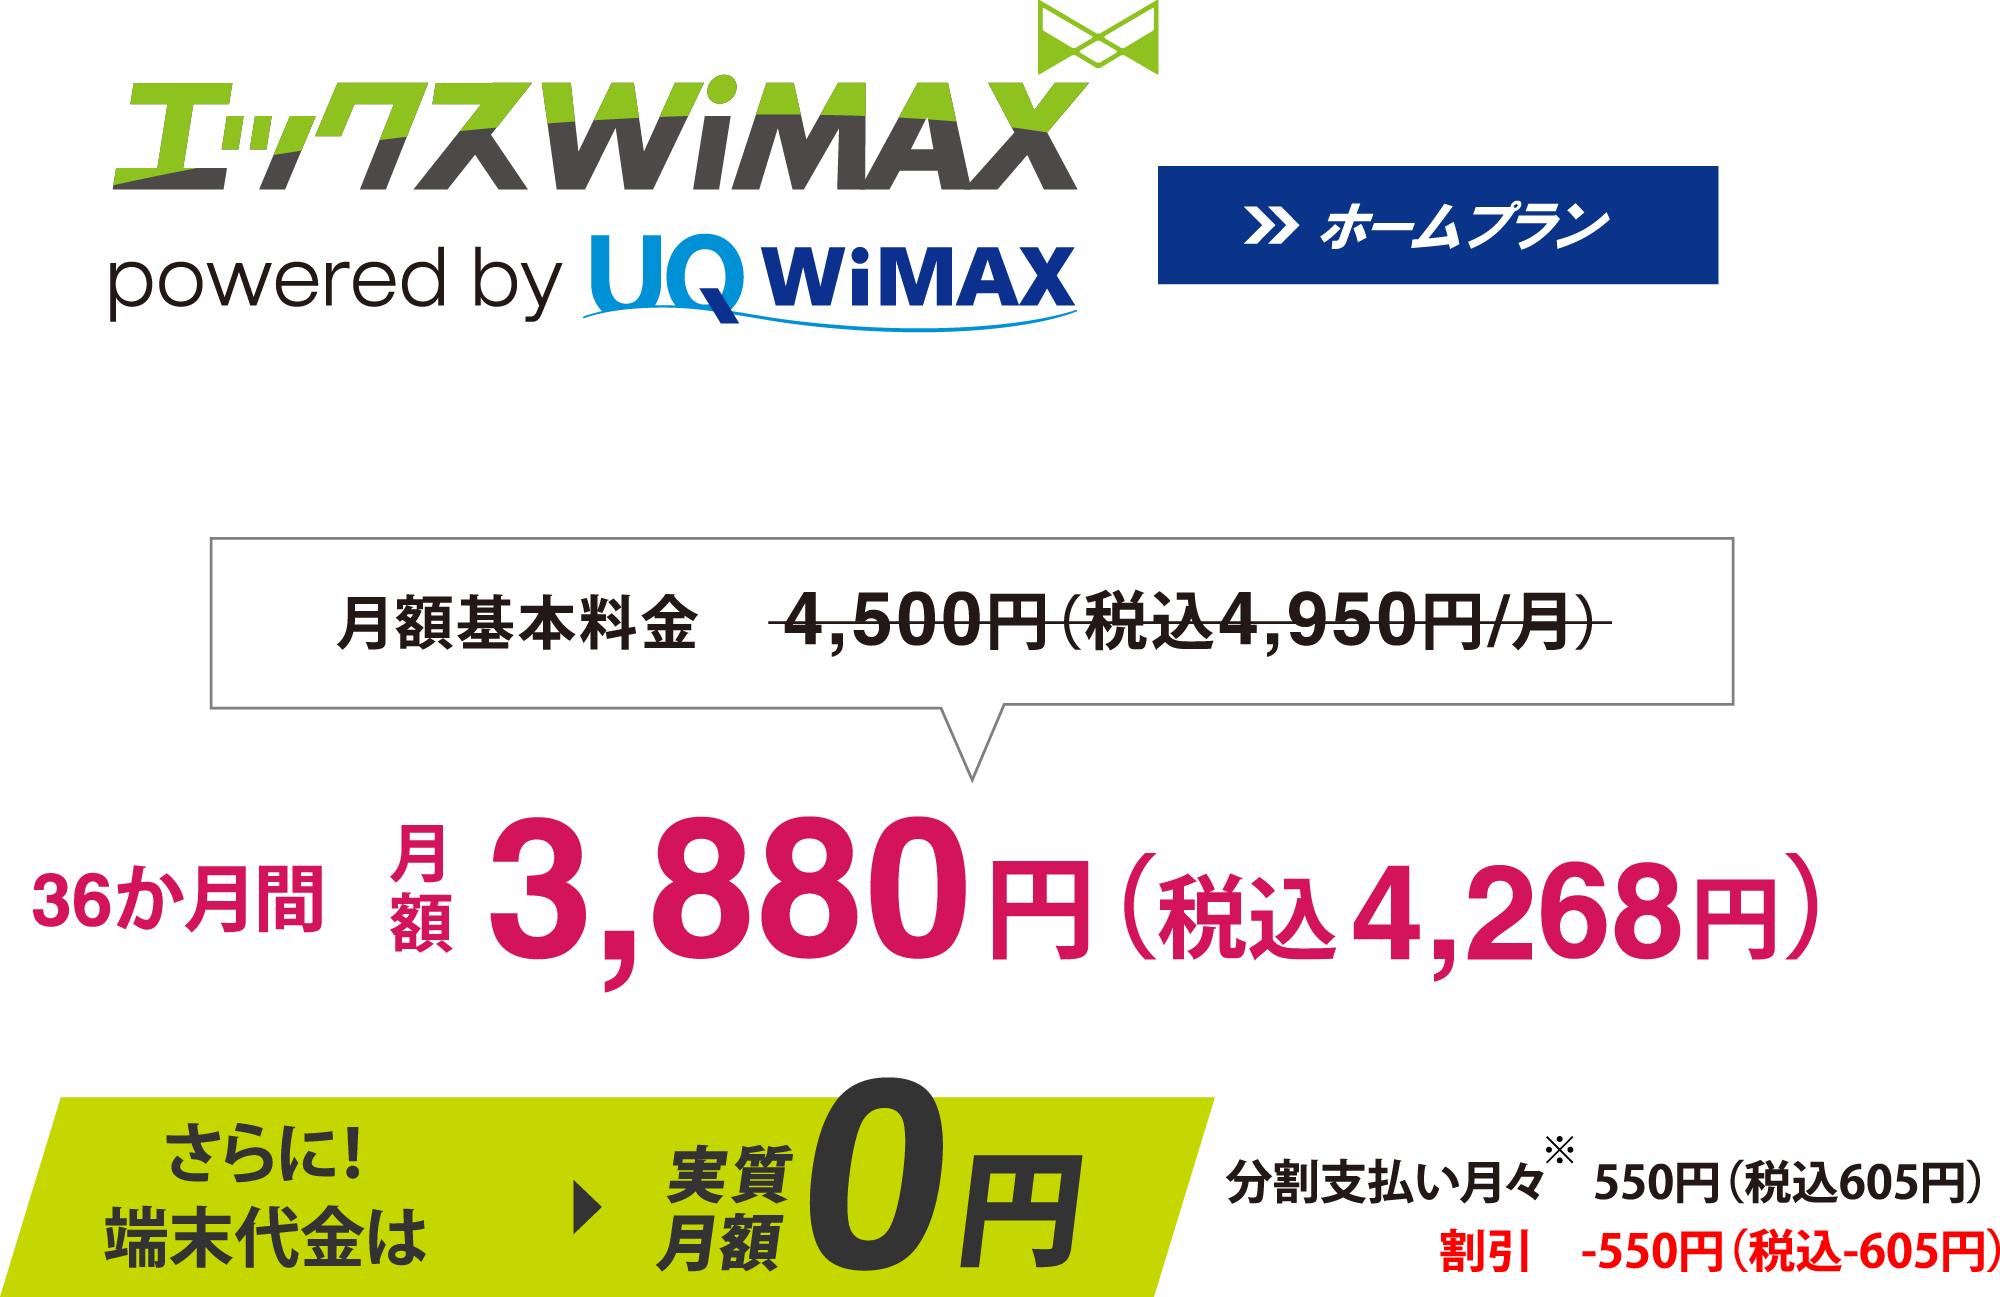 エックスWiMAX - L12 | Xmobile